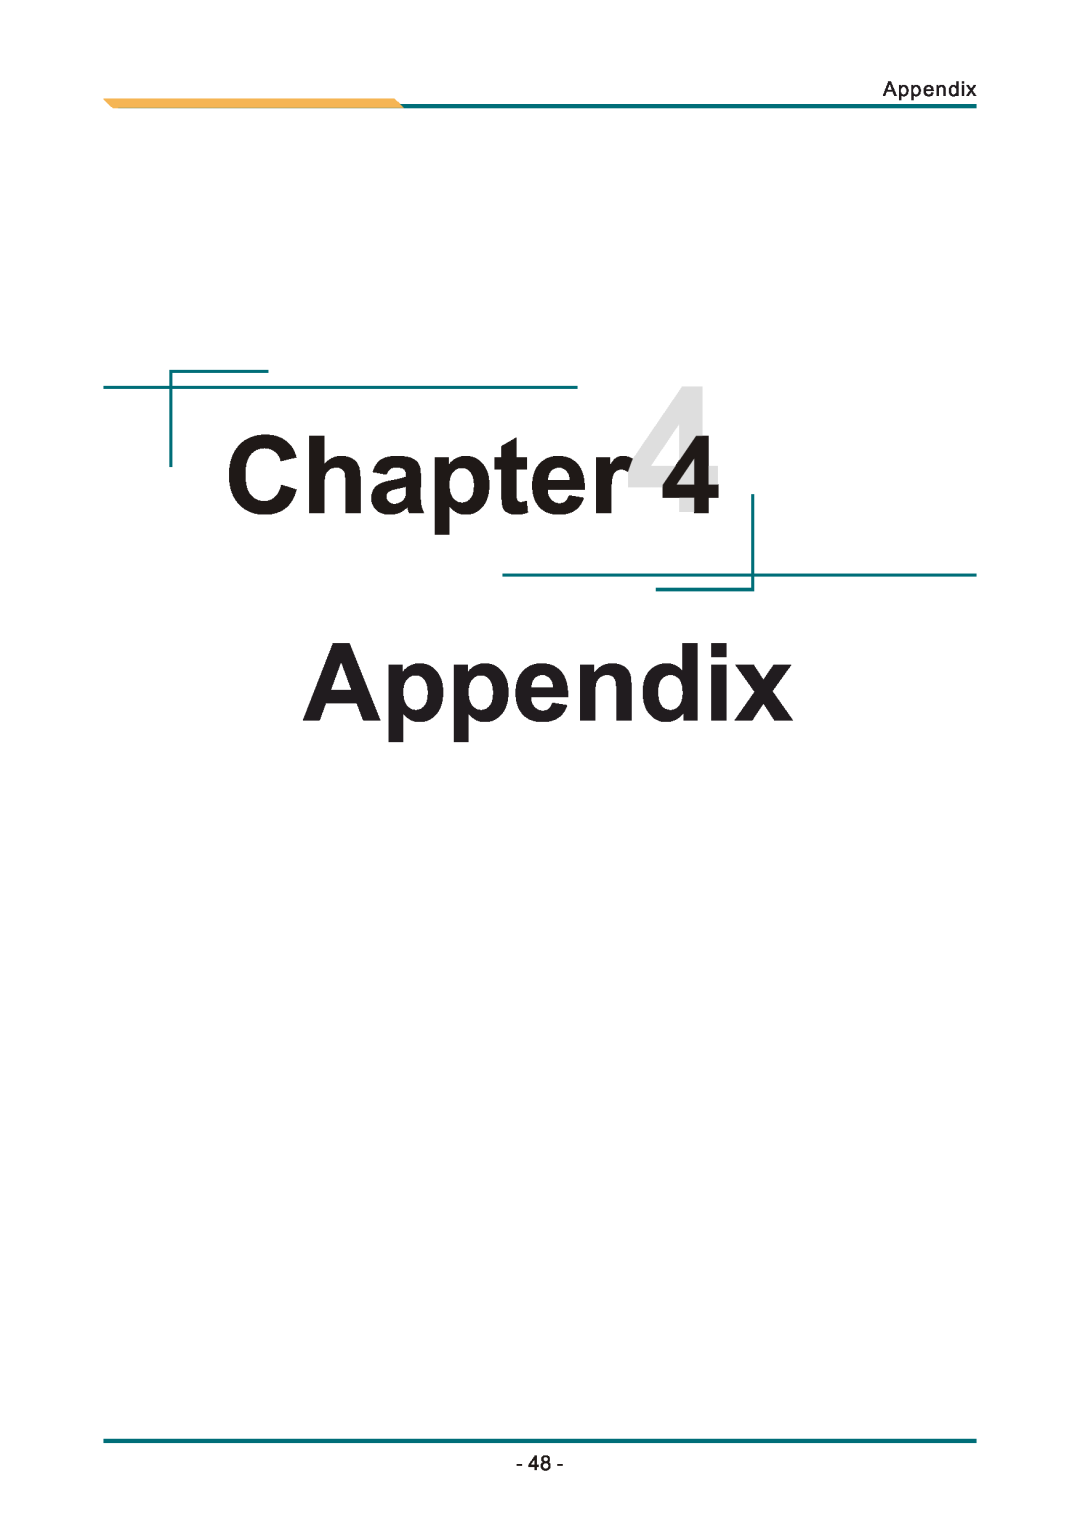 AMD SBX-5363 manual Appendix 